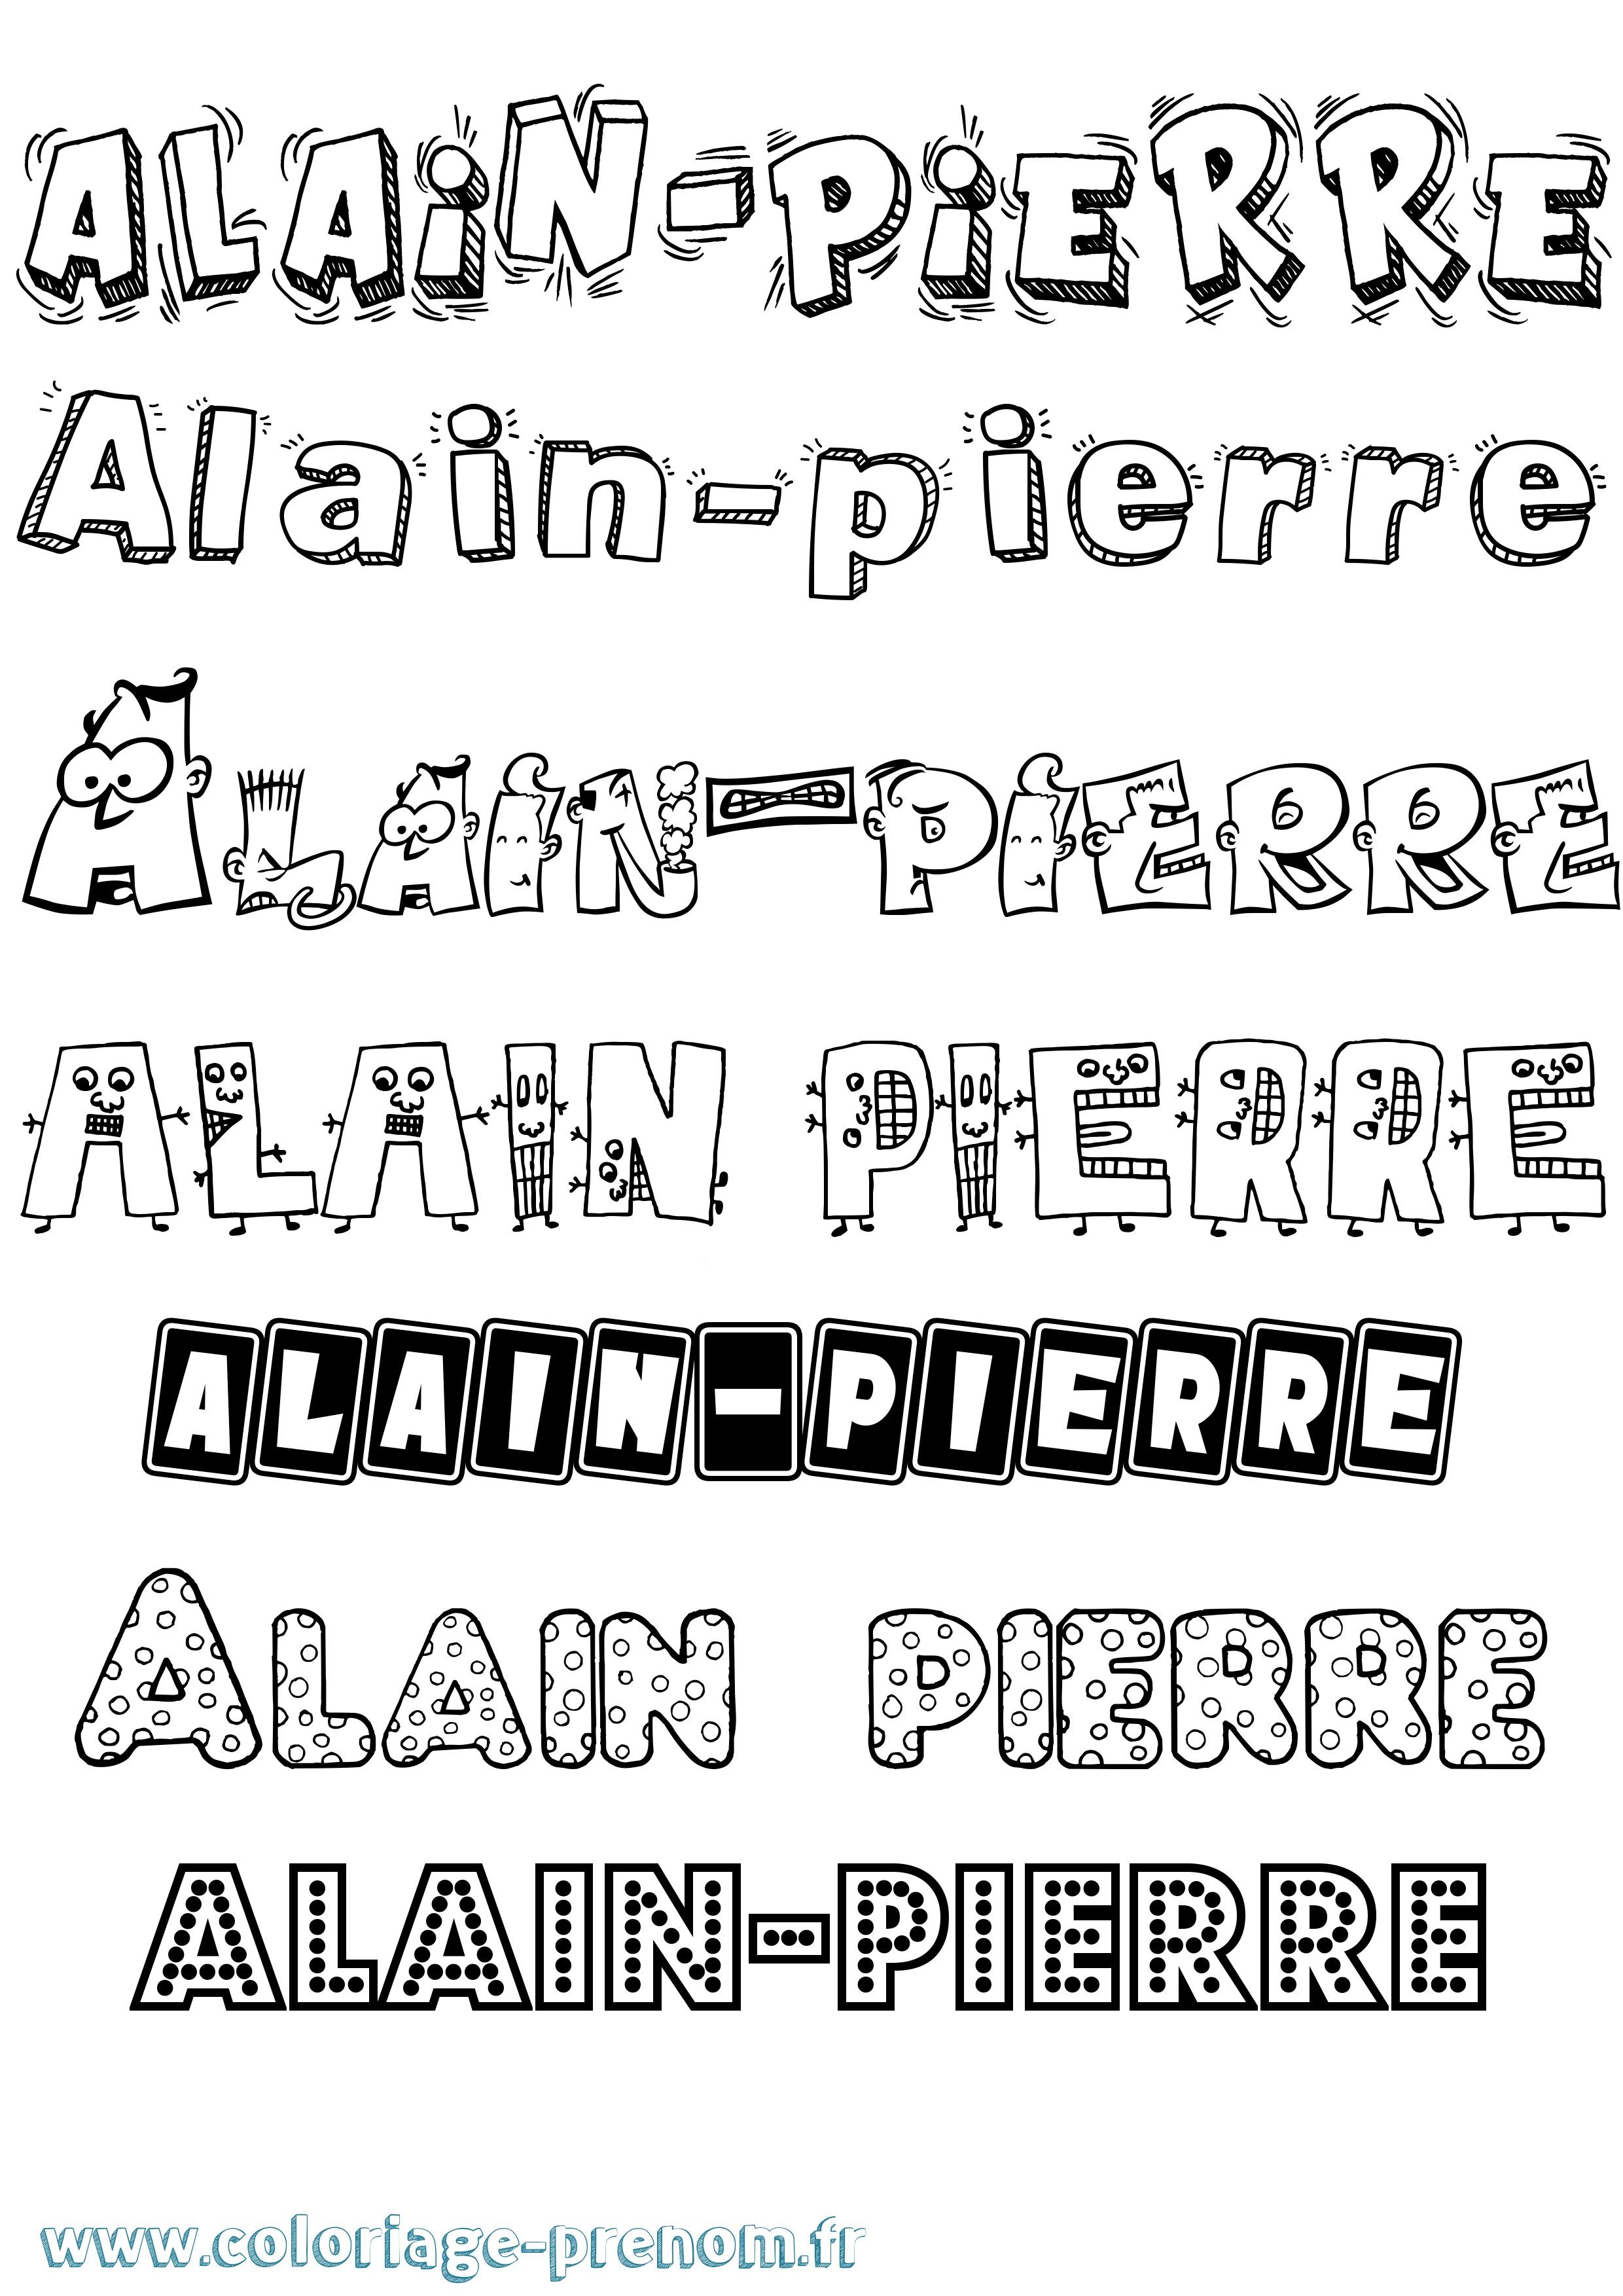 Coloriage prénom Alain-Pierre Fun